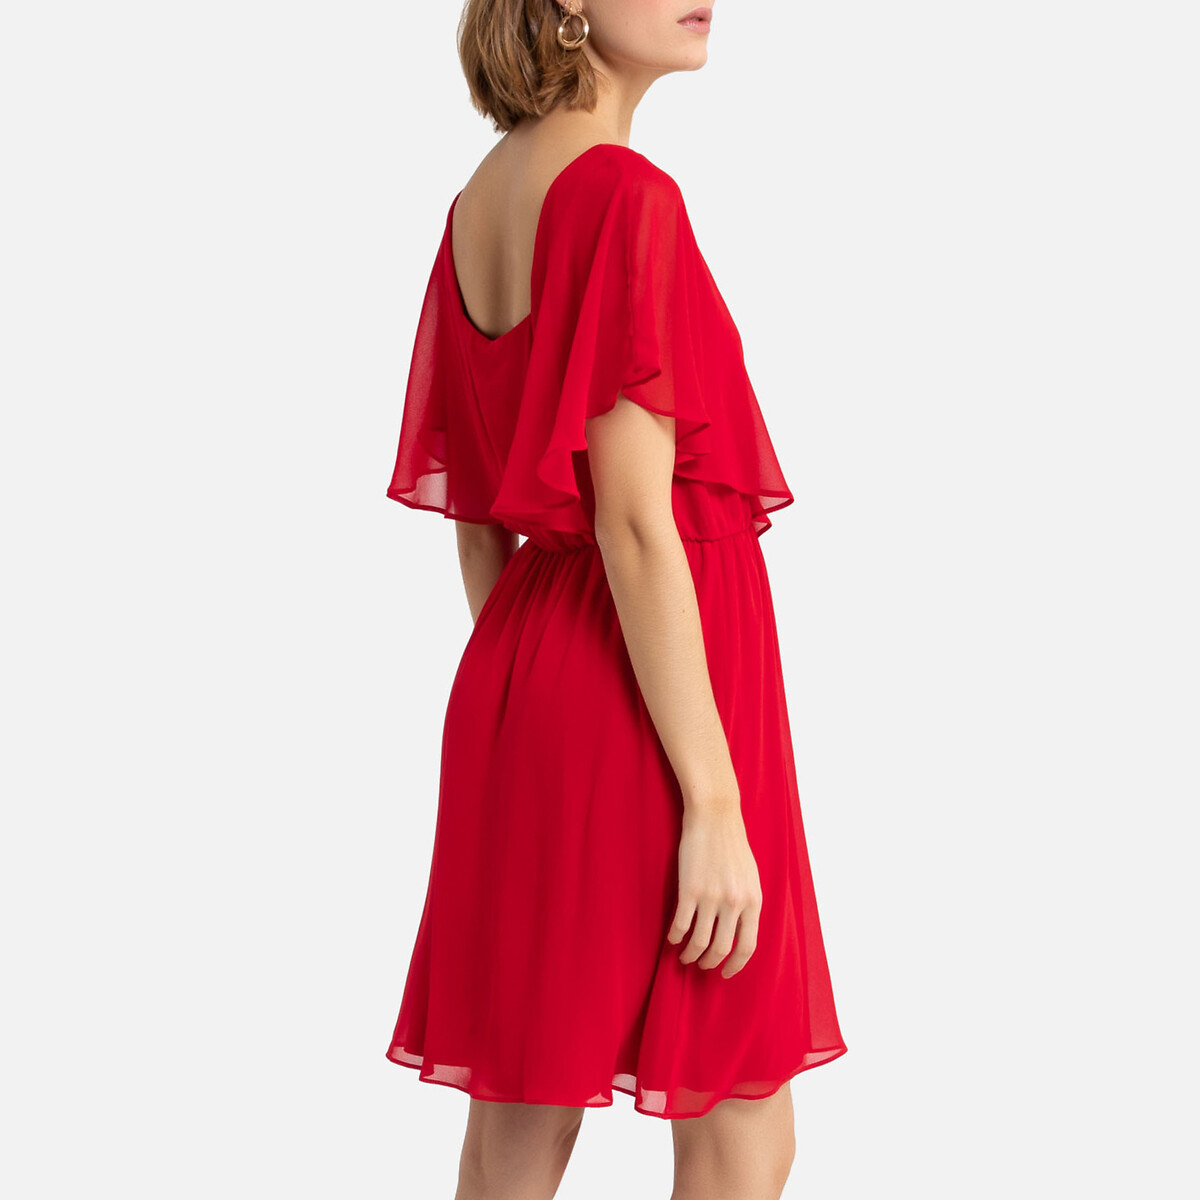 Платье La Redoute Укороченное с V-образным вырезом 36 (FR) - 42 (RUS) красный, размер 36 (FR) - 42 (RUS) Укороченное с V-образным вырезом 36 (FR) - 42 (RUS) красный - фото 4